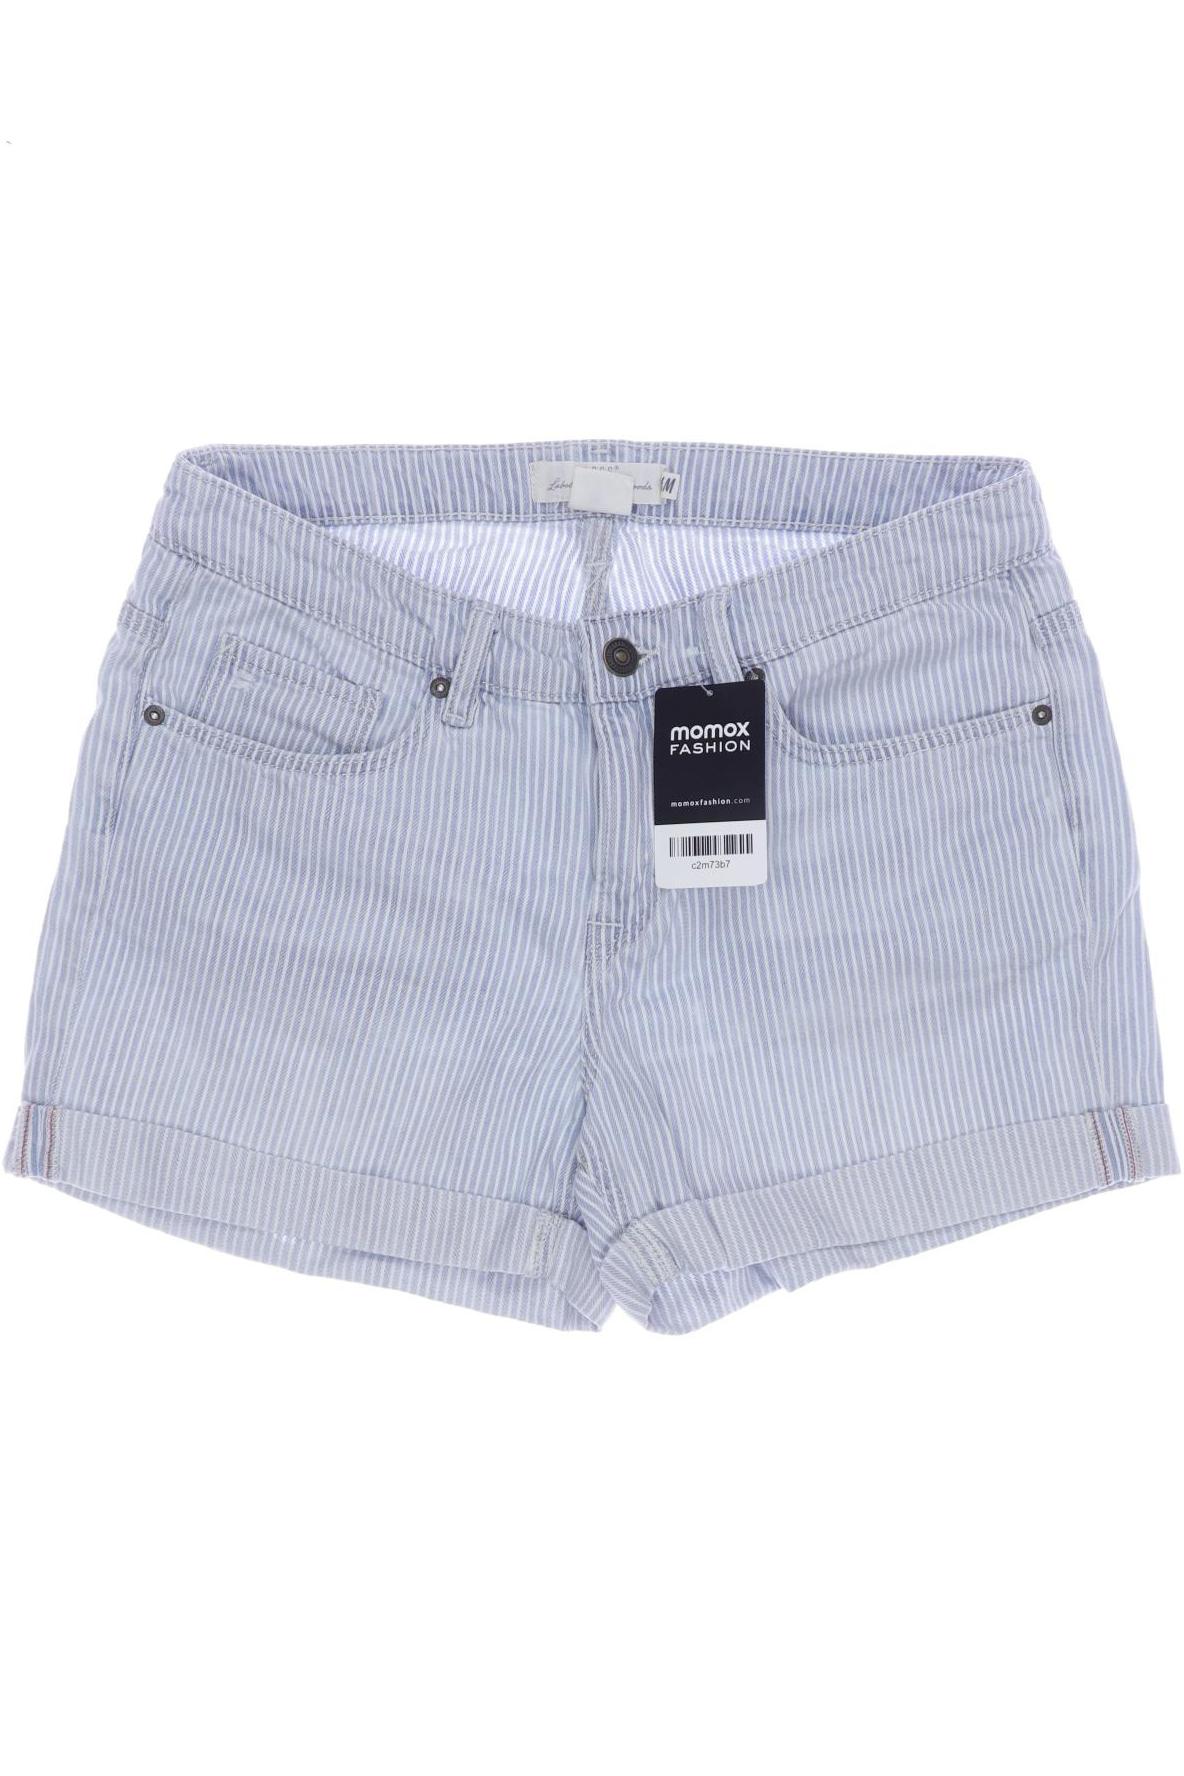 H&M Damen Shorts, hellblau, Gr. 38 von H&M